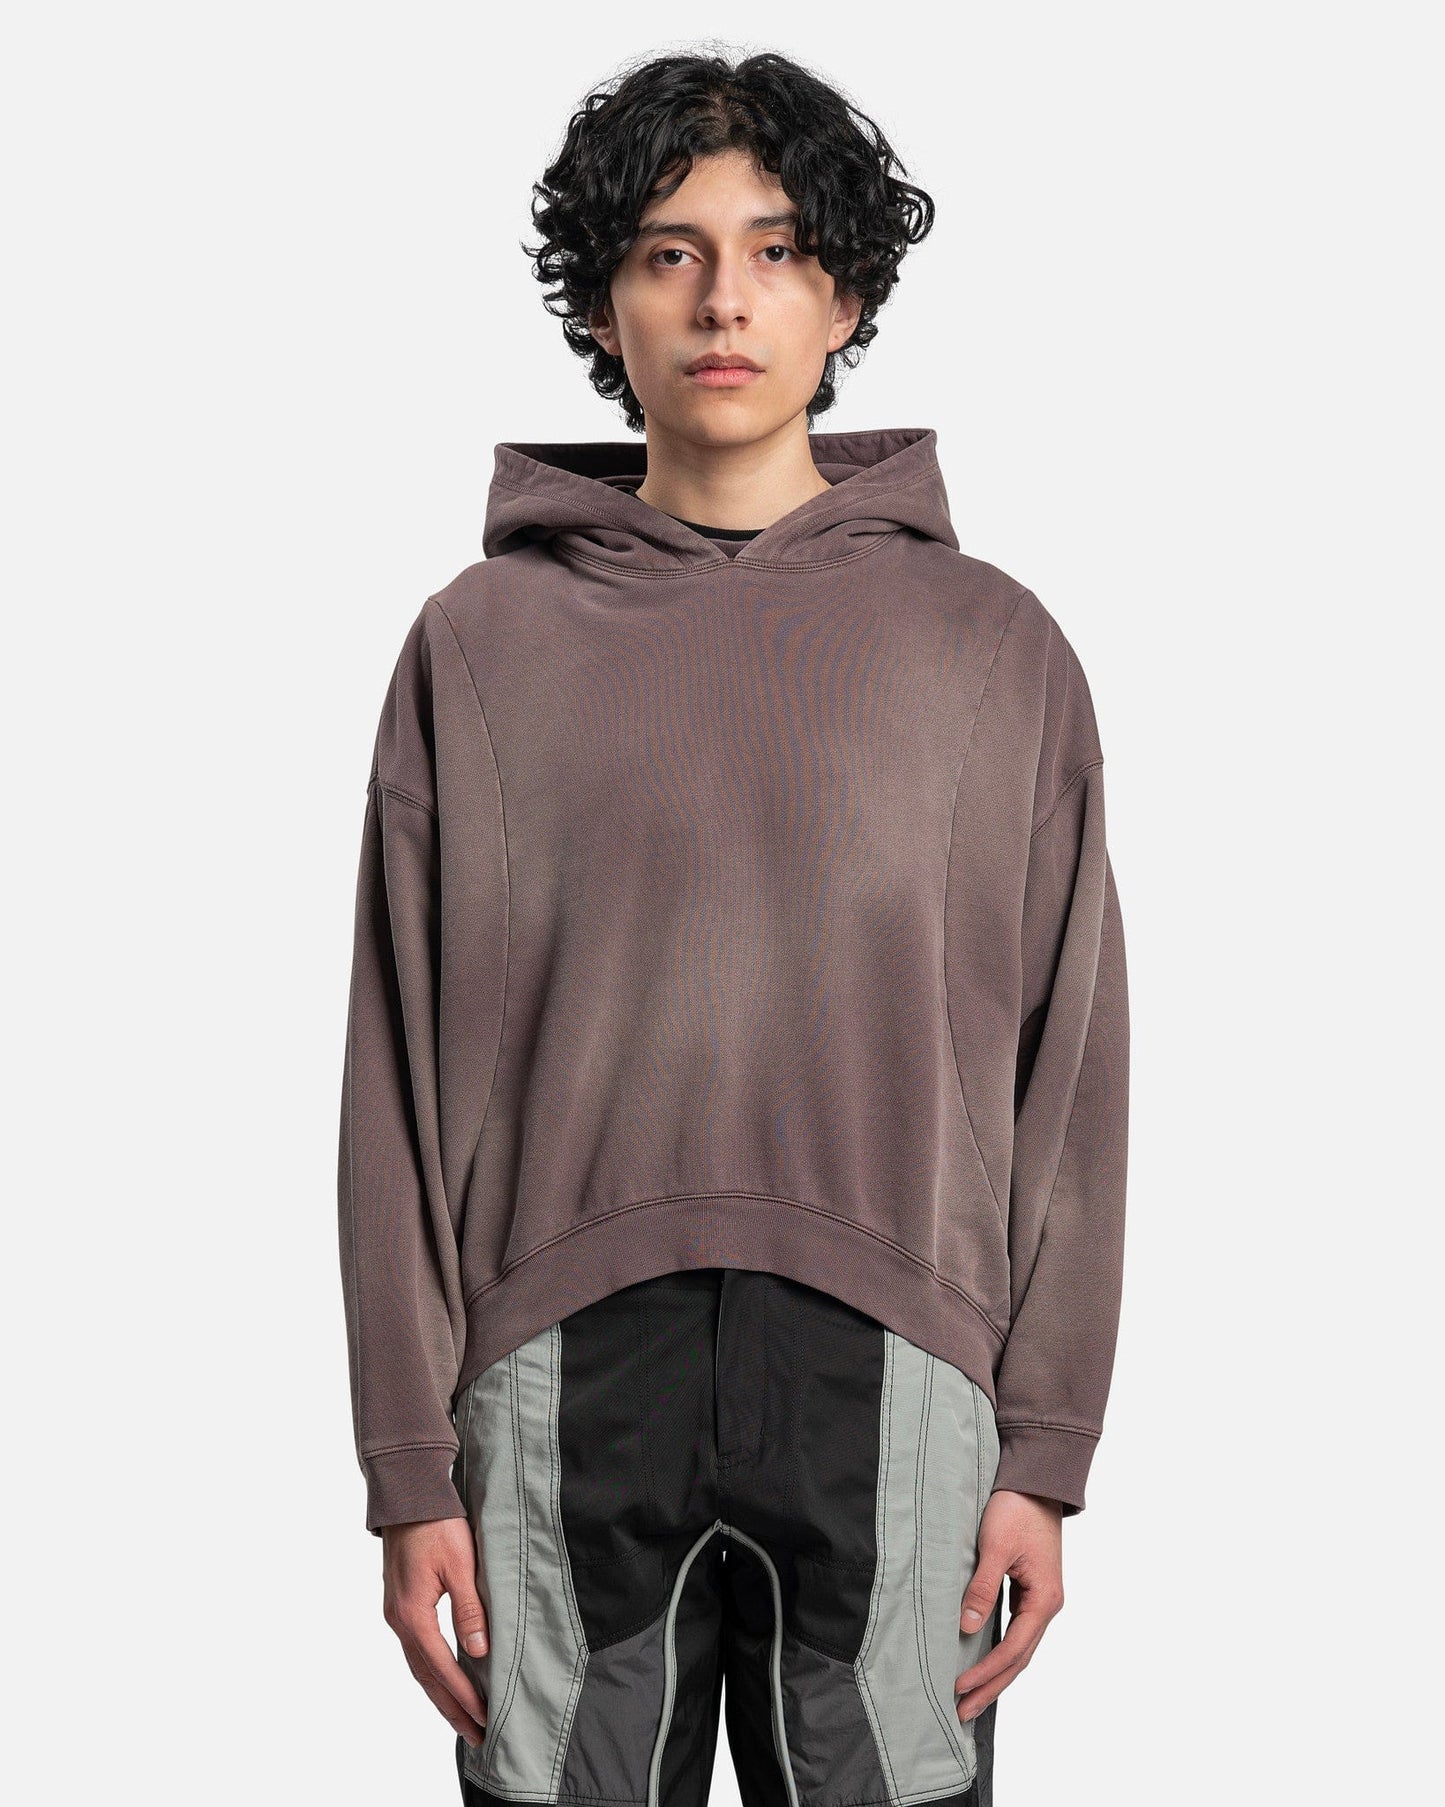 FFFPOSTALSERVICE Men's Sweatshirts Round Hem Hoodie V2 in Ghost Lilac